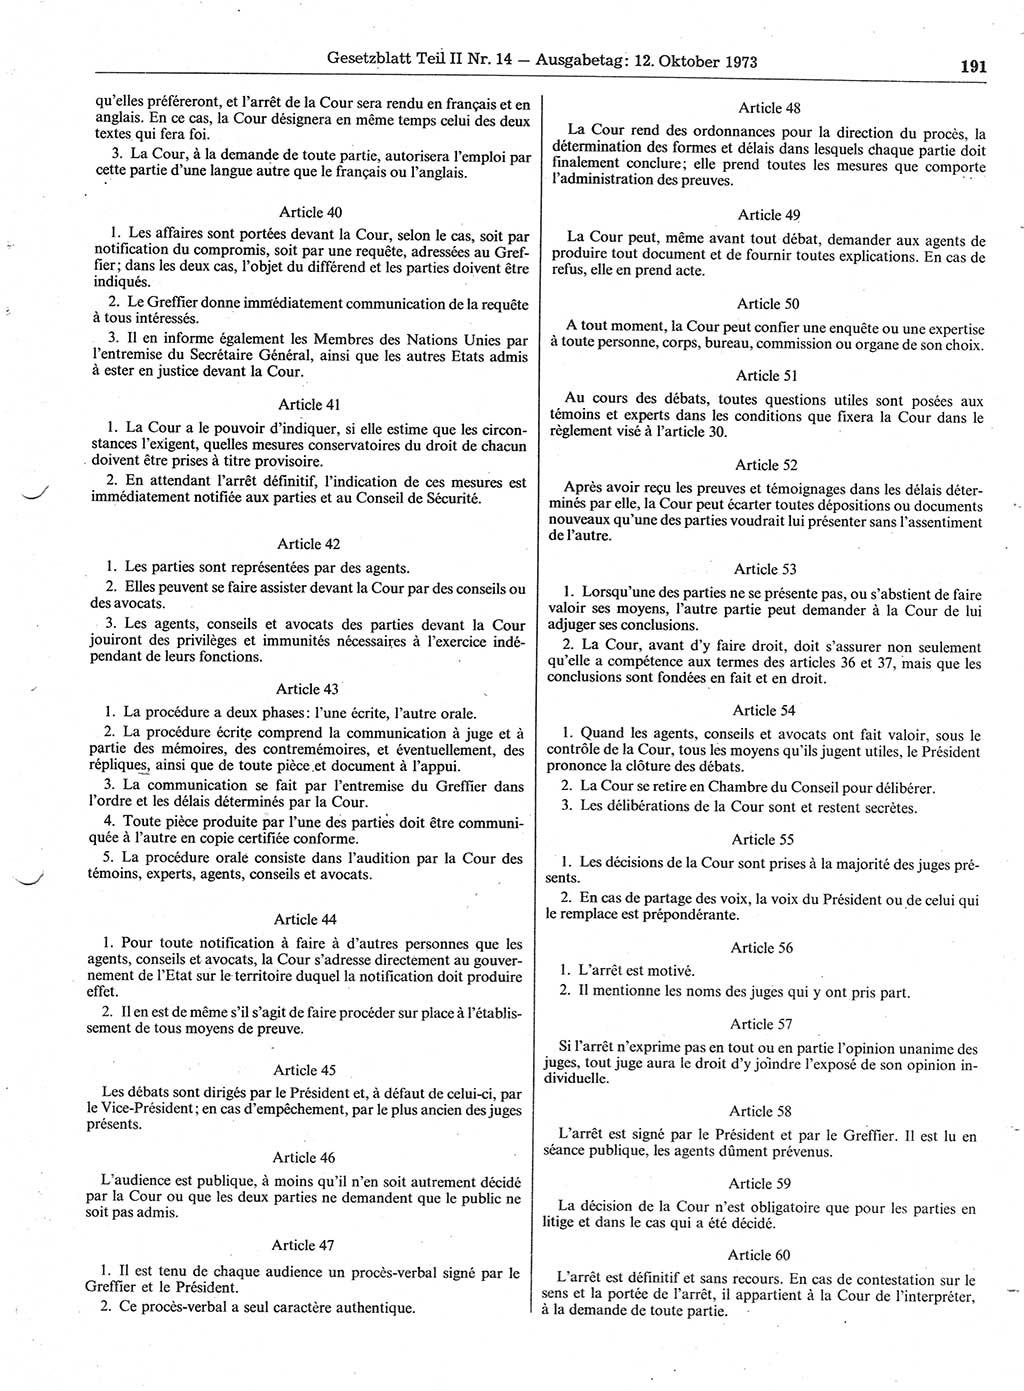 Gesetzblatt (GBl.) der Deutschen Demokratischen Republik (DDR) Teil ⅠⅠ 1973, Seite 191 (GBl. DDR ⅠⅠ 1973, S. 191)